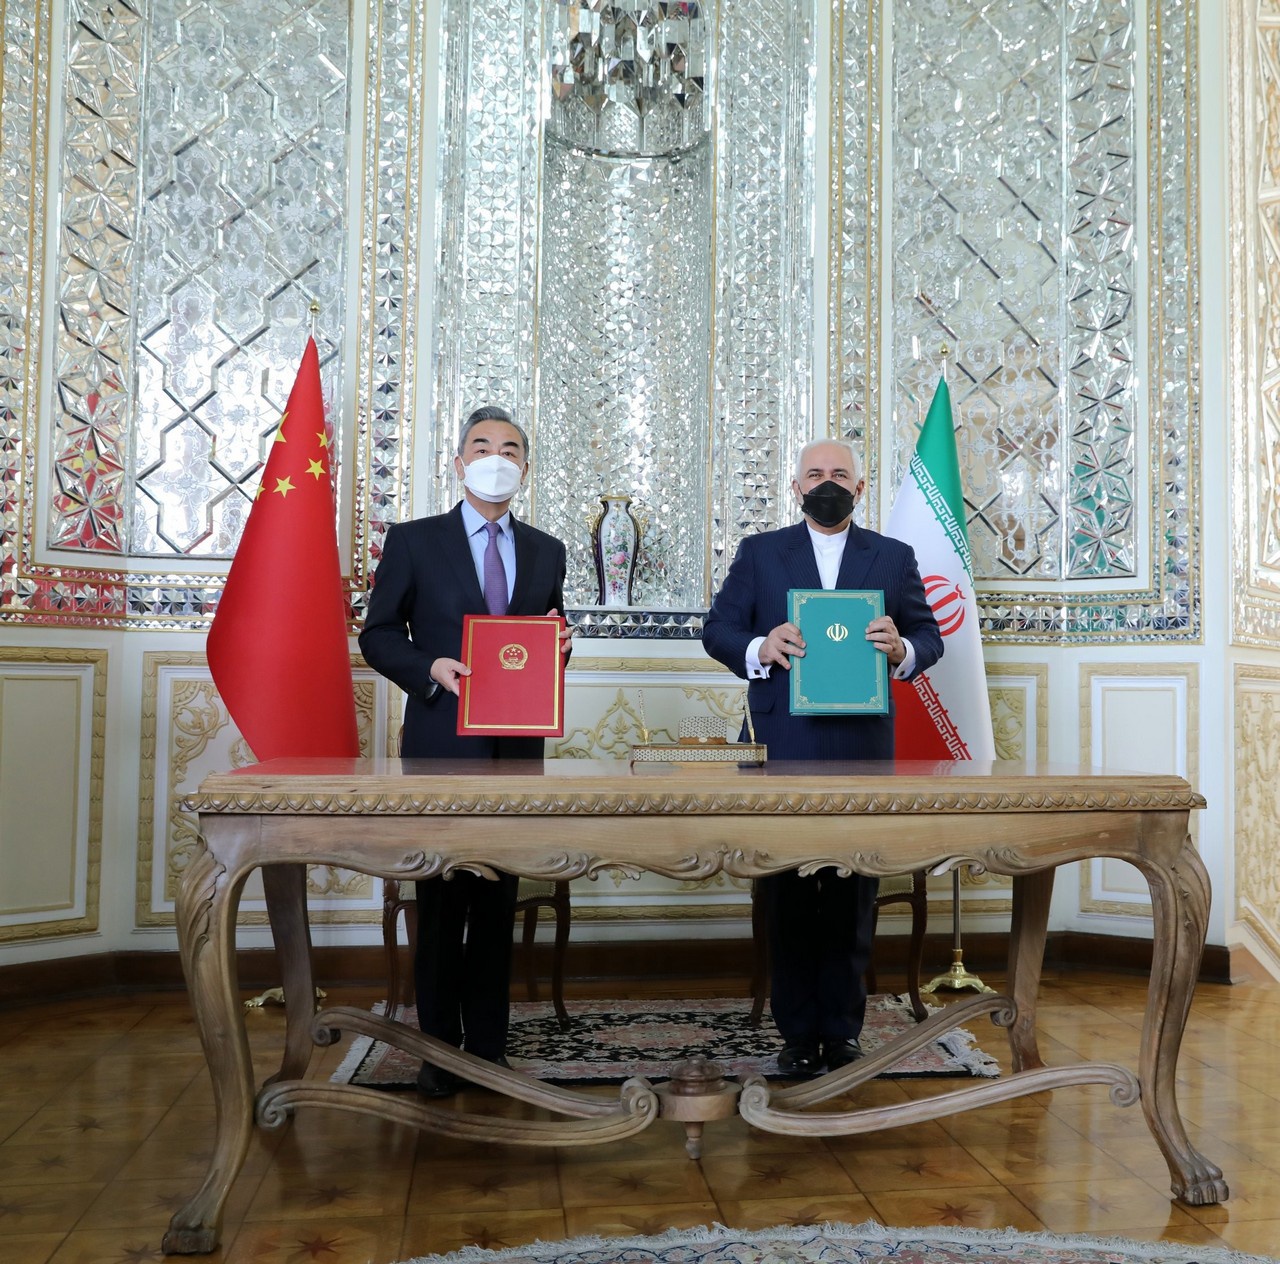 Иран и Китай 27 марта 2021 года заключили соглашение о политическом, стратегическом и экономическом сотрудничестве сроком на 25 лет. США отдыхают.